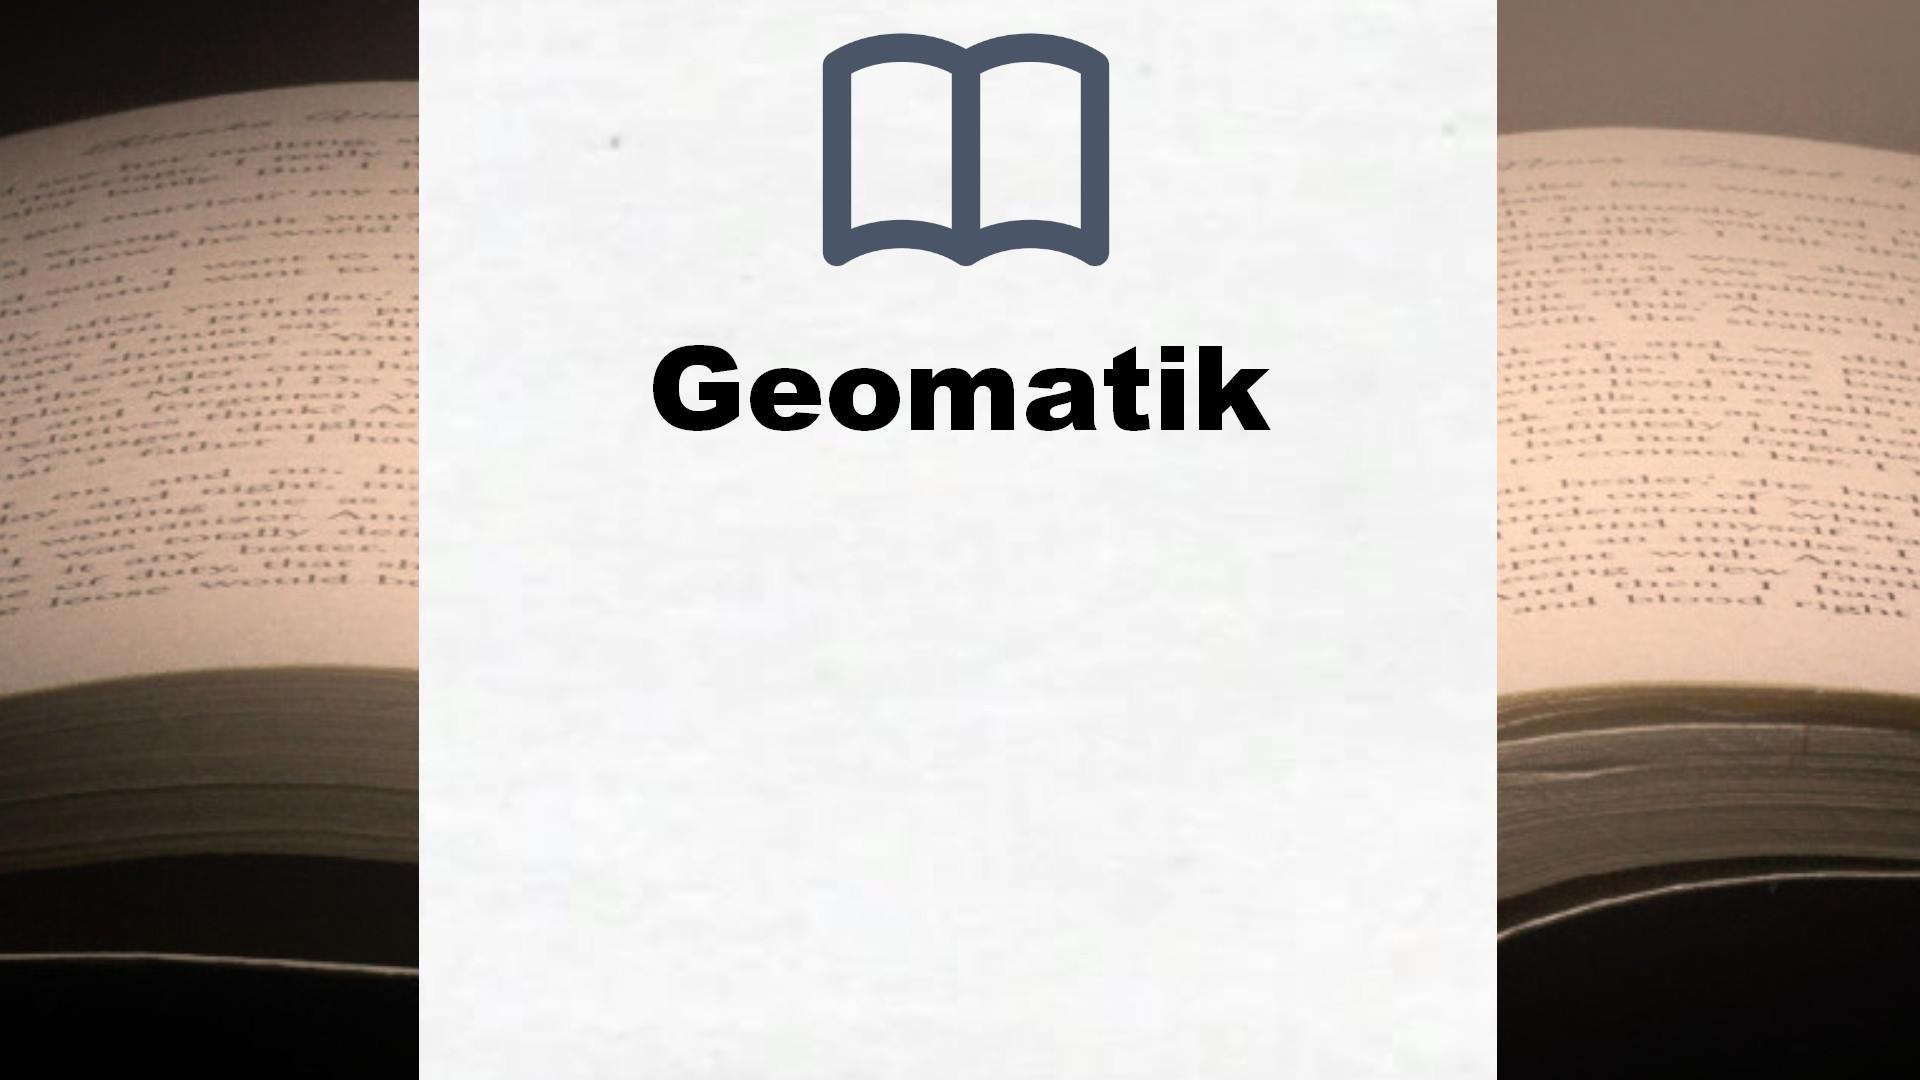 Bücher über Geomatik